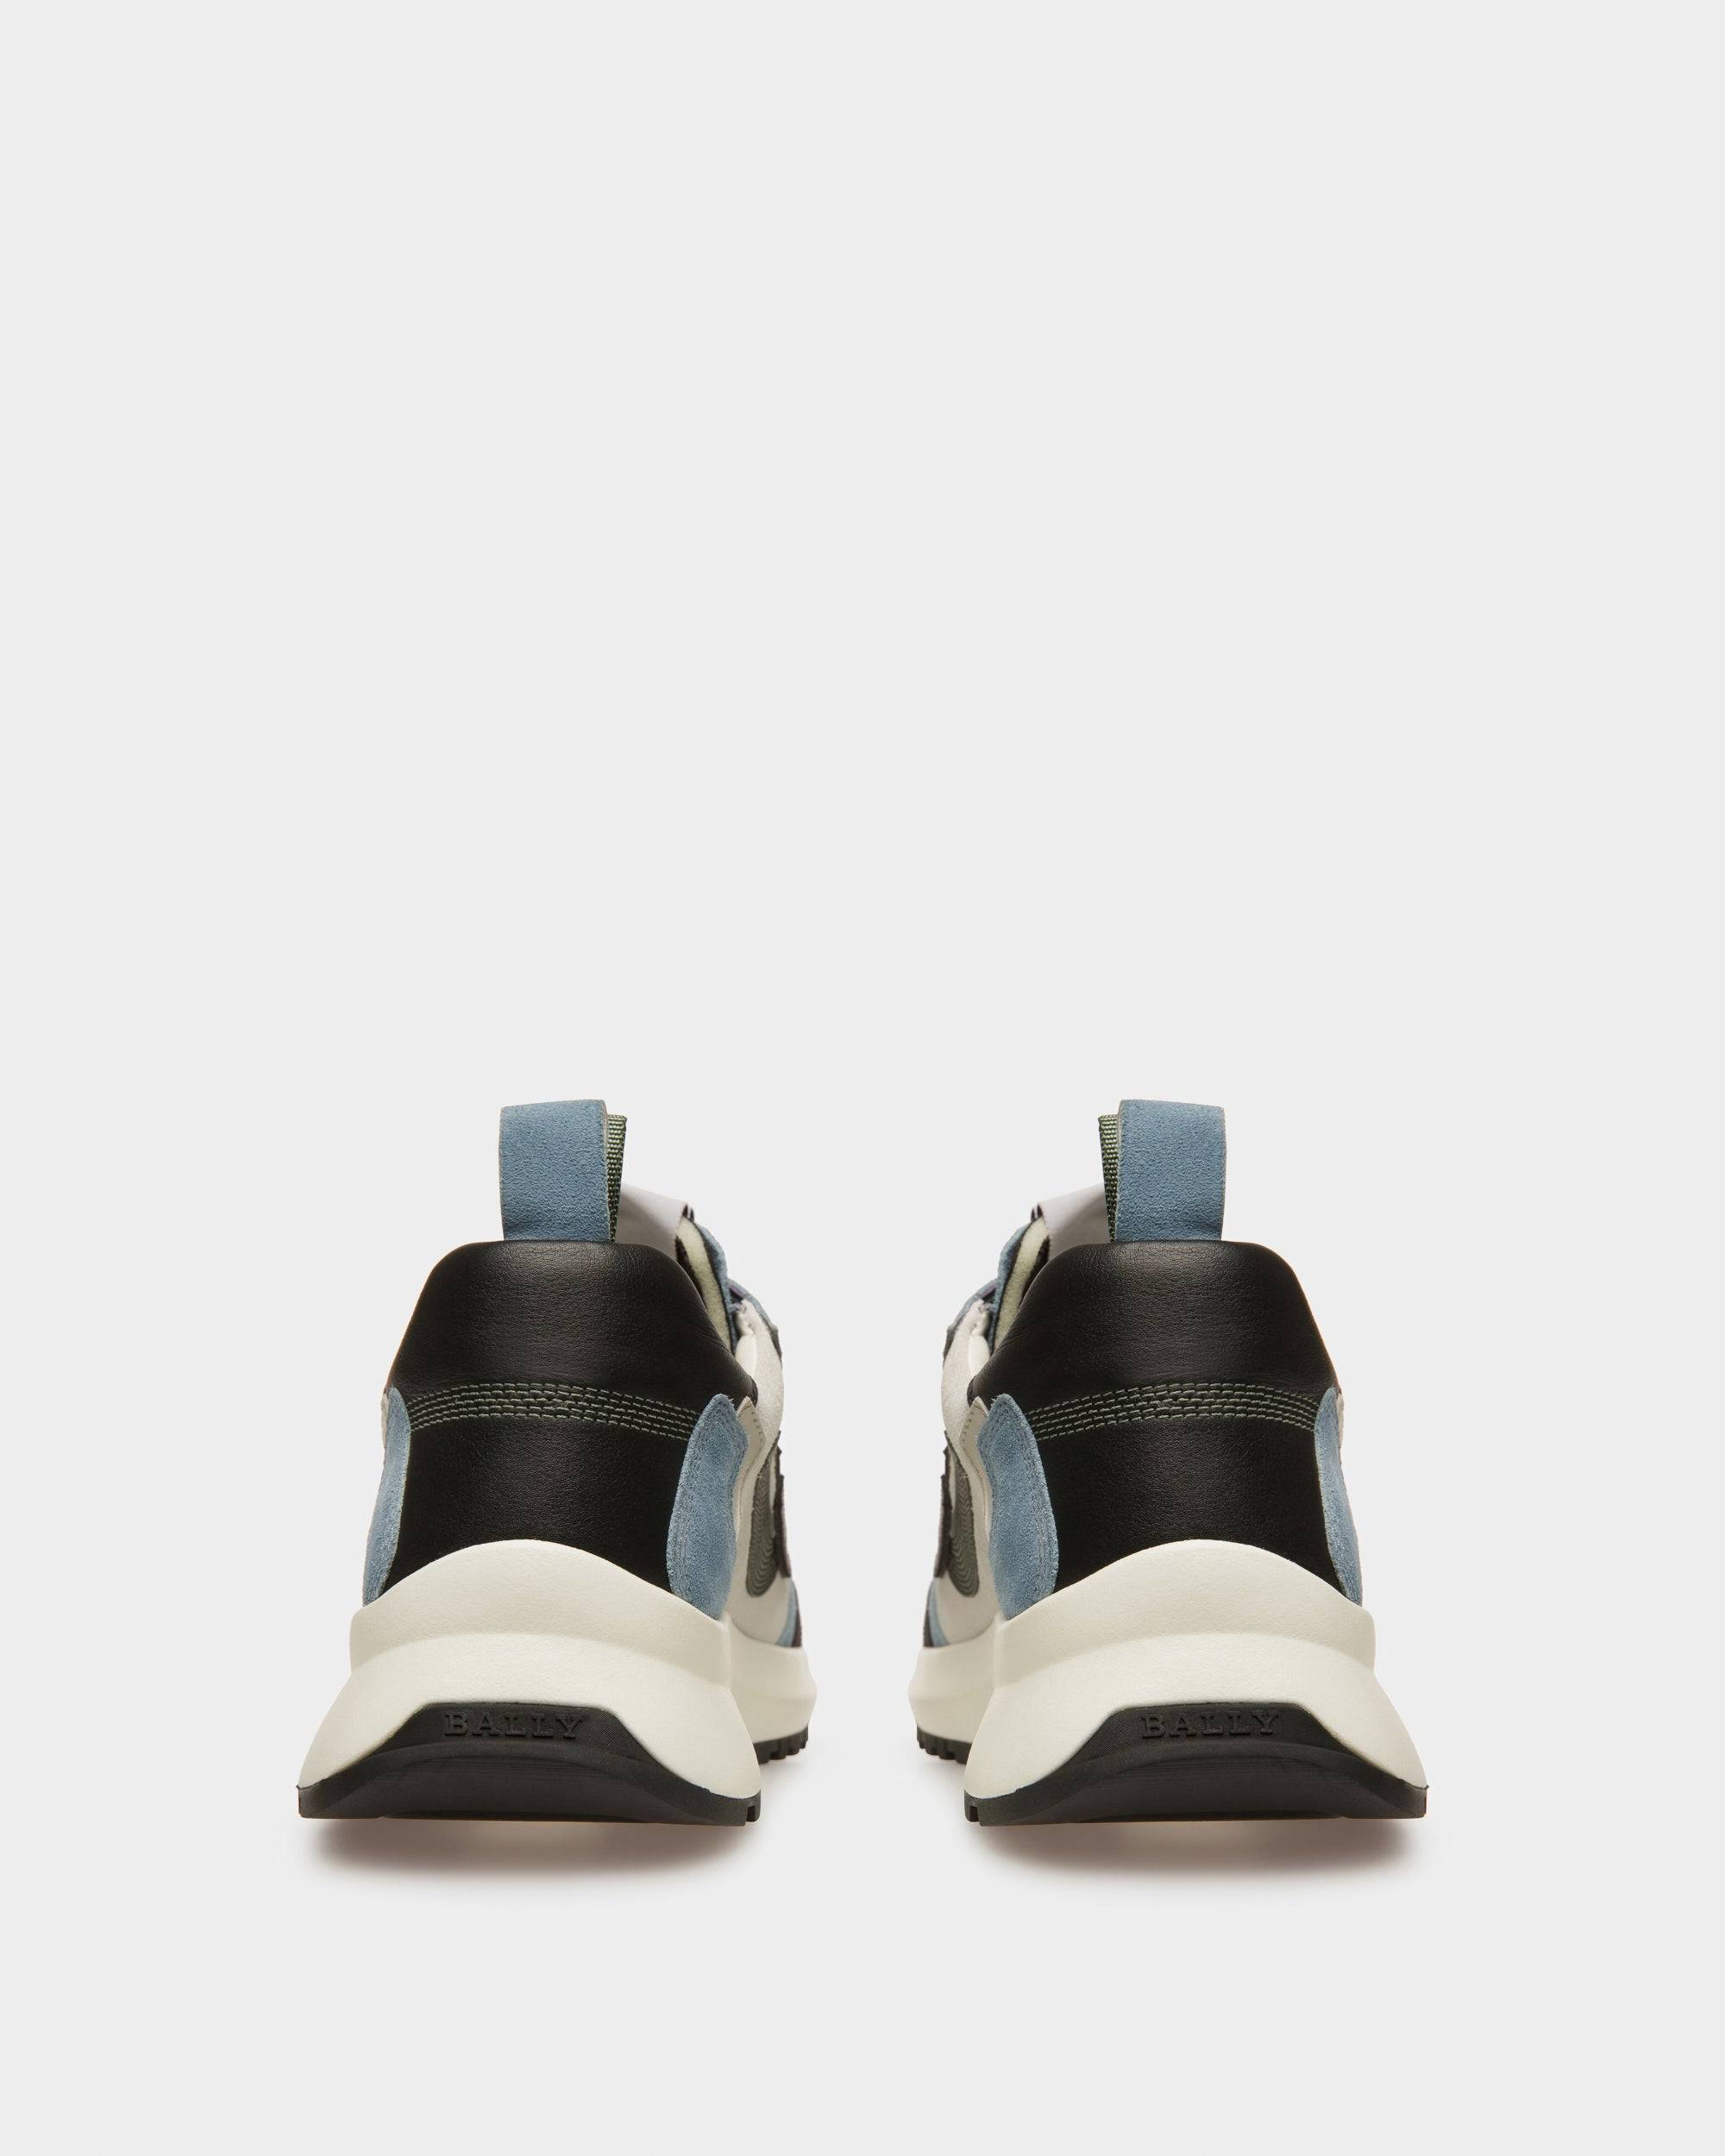 Darky Sneaker In Pelle Nera, Azzurra E Bianco Cipria - Bally - 03